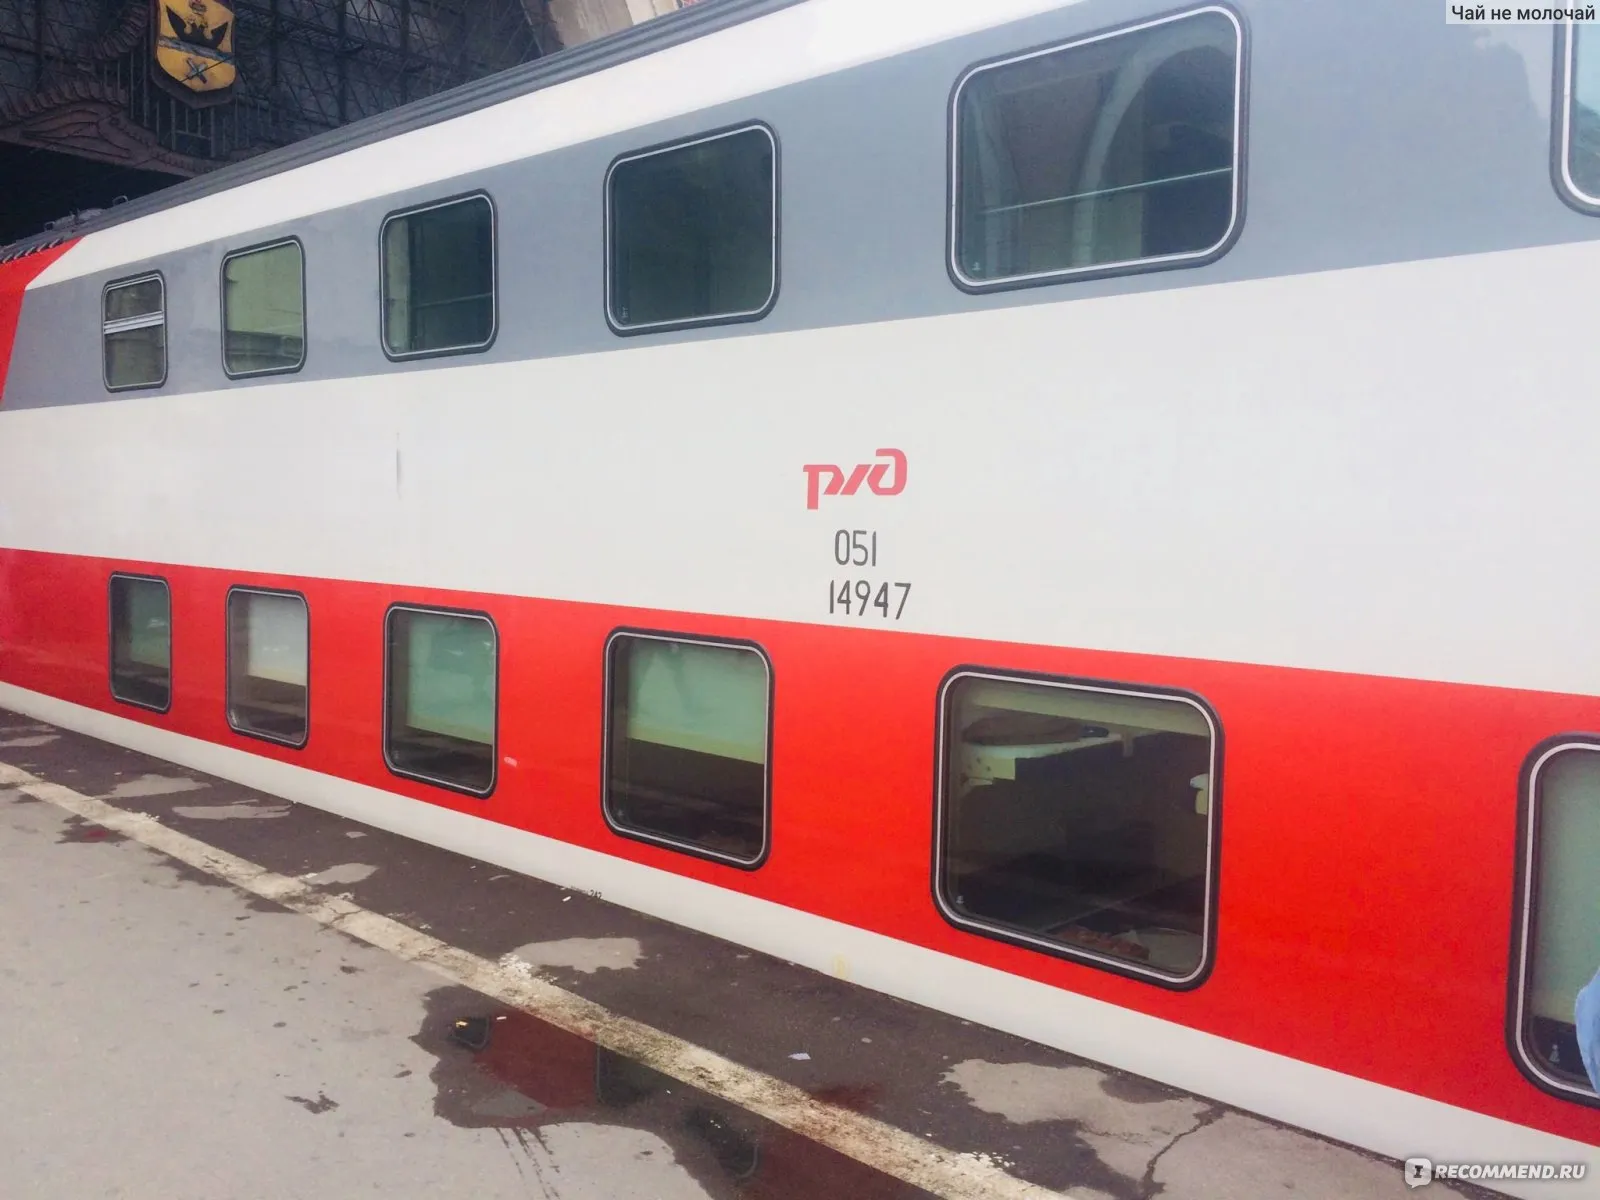 Поезд 102 москва адлер двухэтажный. Поезд 104 Москва Адлер. Поезд 036с Северная Пальмира двухэтажный. 737ж «двухэтажный состав». Двухэтажный поезд Москва Адлер.